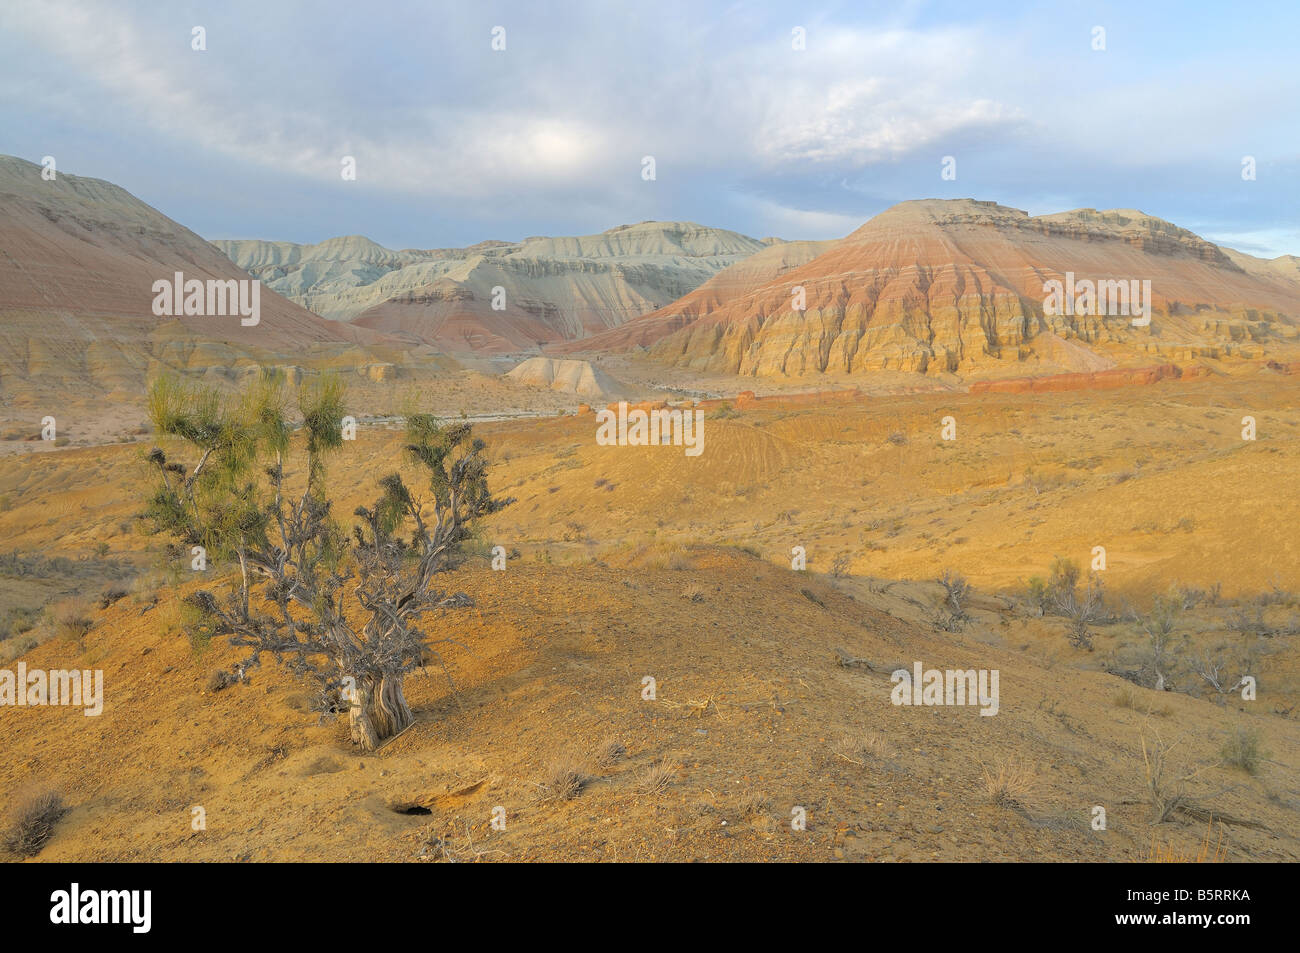 Arbre généalogique Saxaul dans le sud du Kazakhstan. Montagnes d'Aktau, Altyn Emel parc national. Banque D'Images